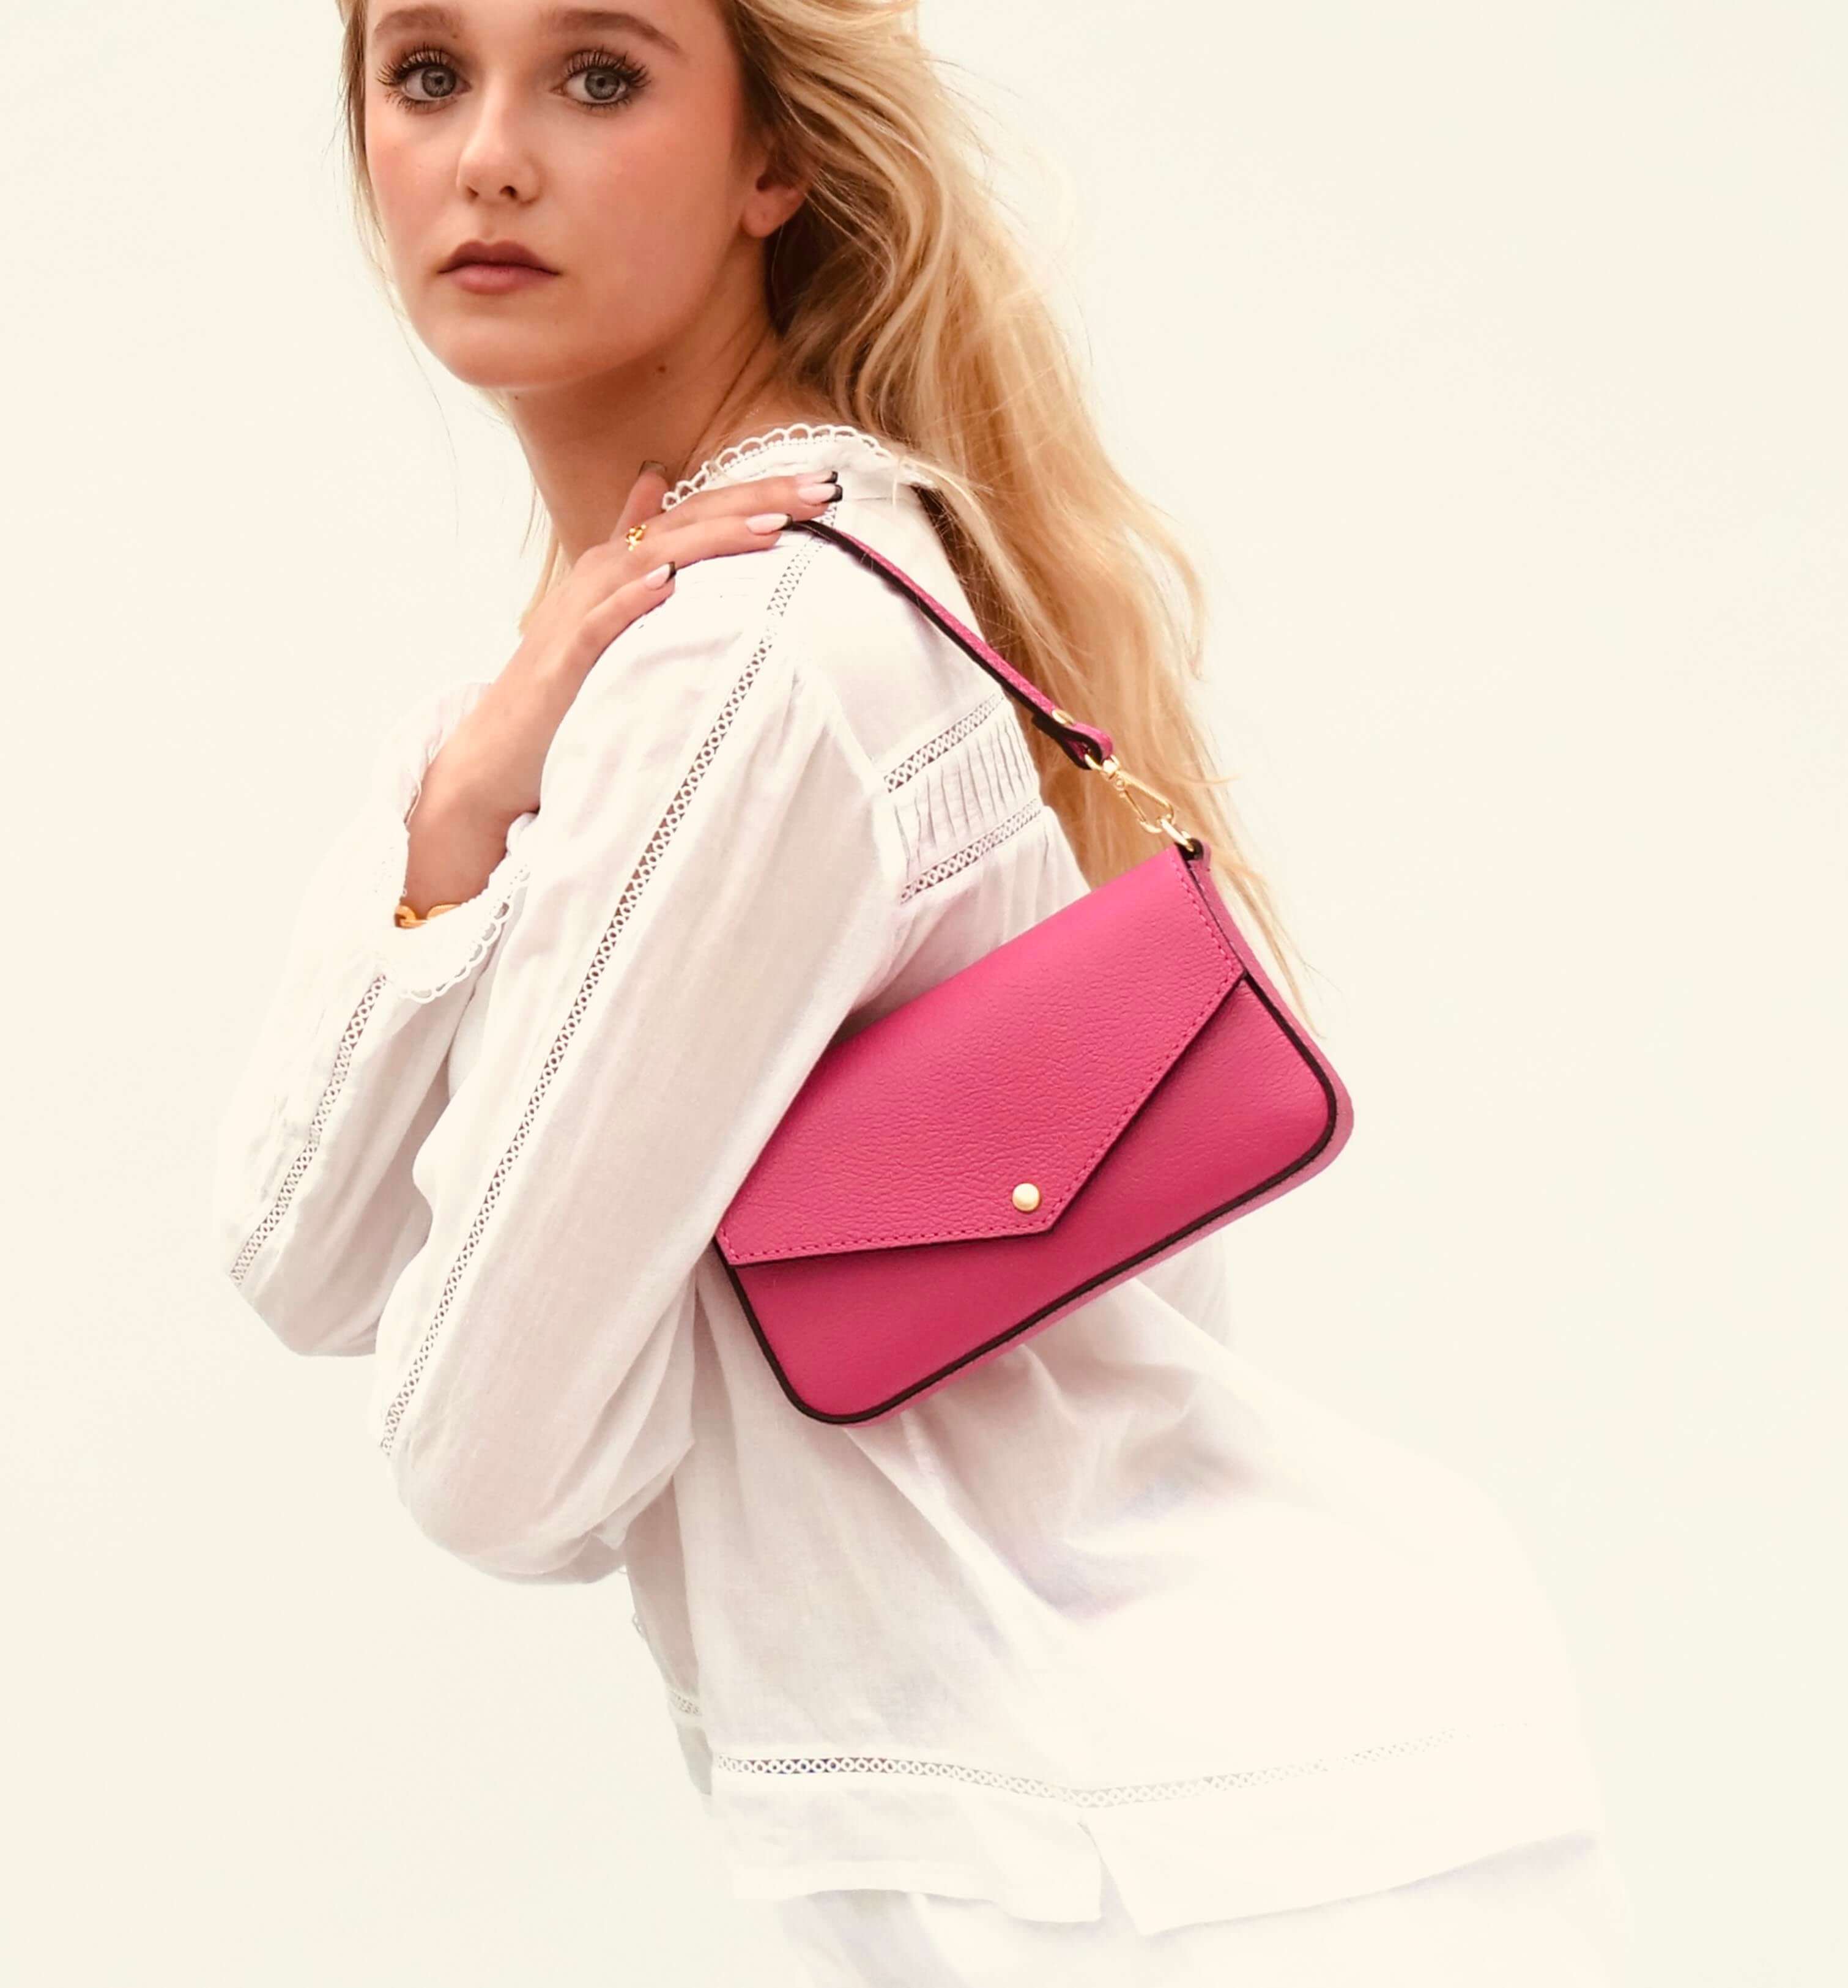 The Munro Barbie Pink Leather Shoulder Bag